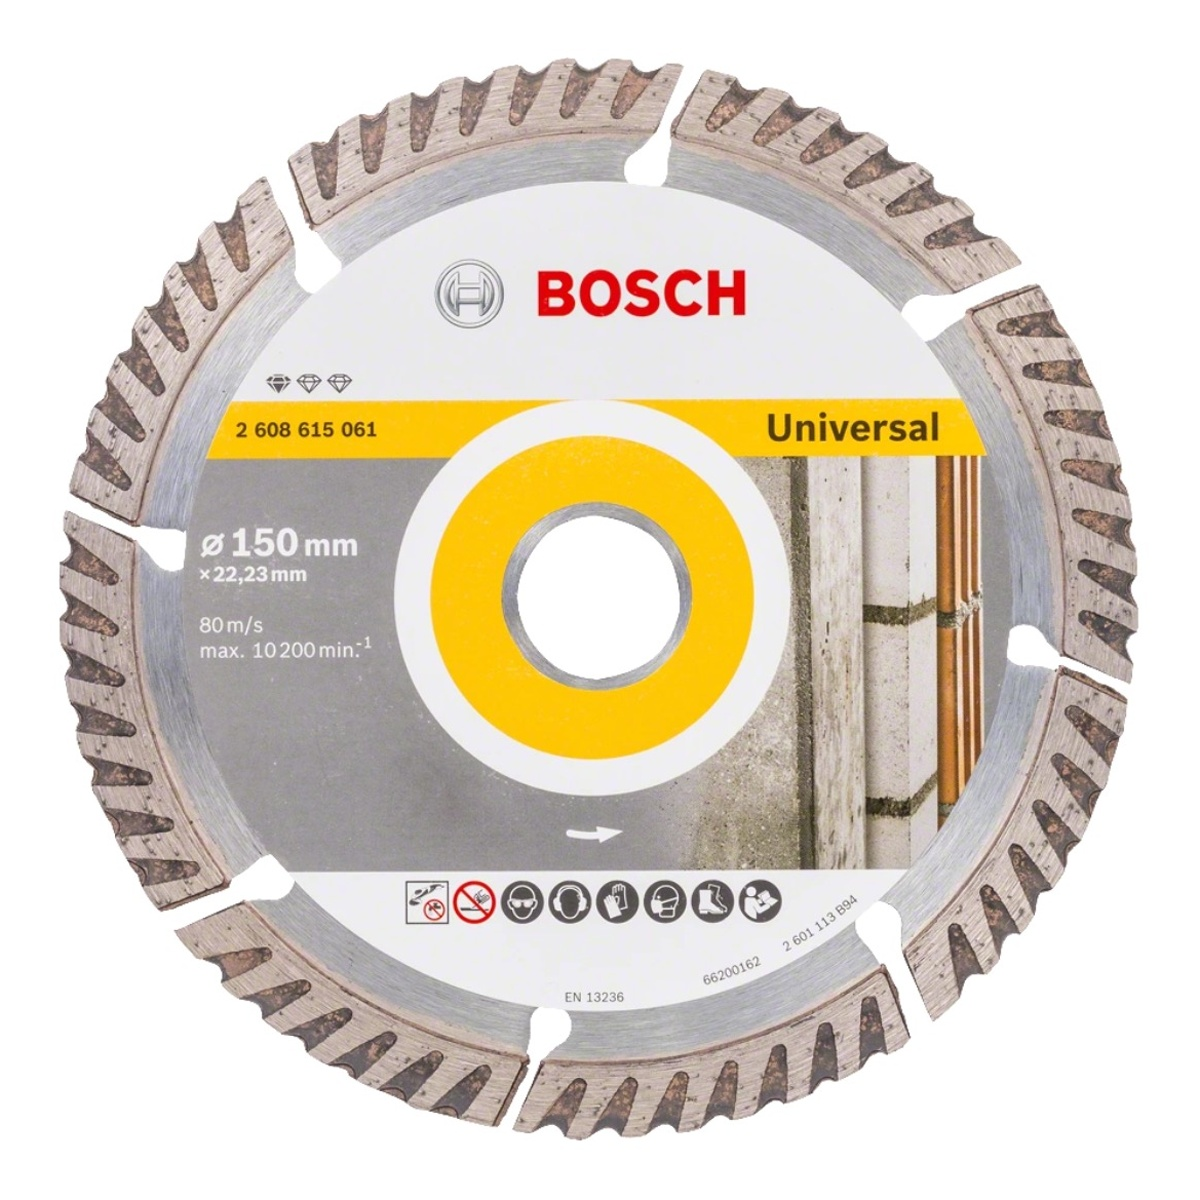 BOSCH PROFESSIONAL Bosch Standard for Blua Diamanttrennscheibe 